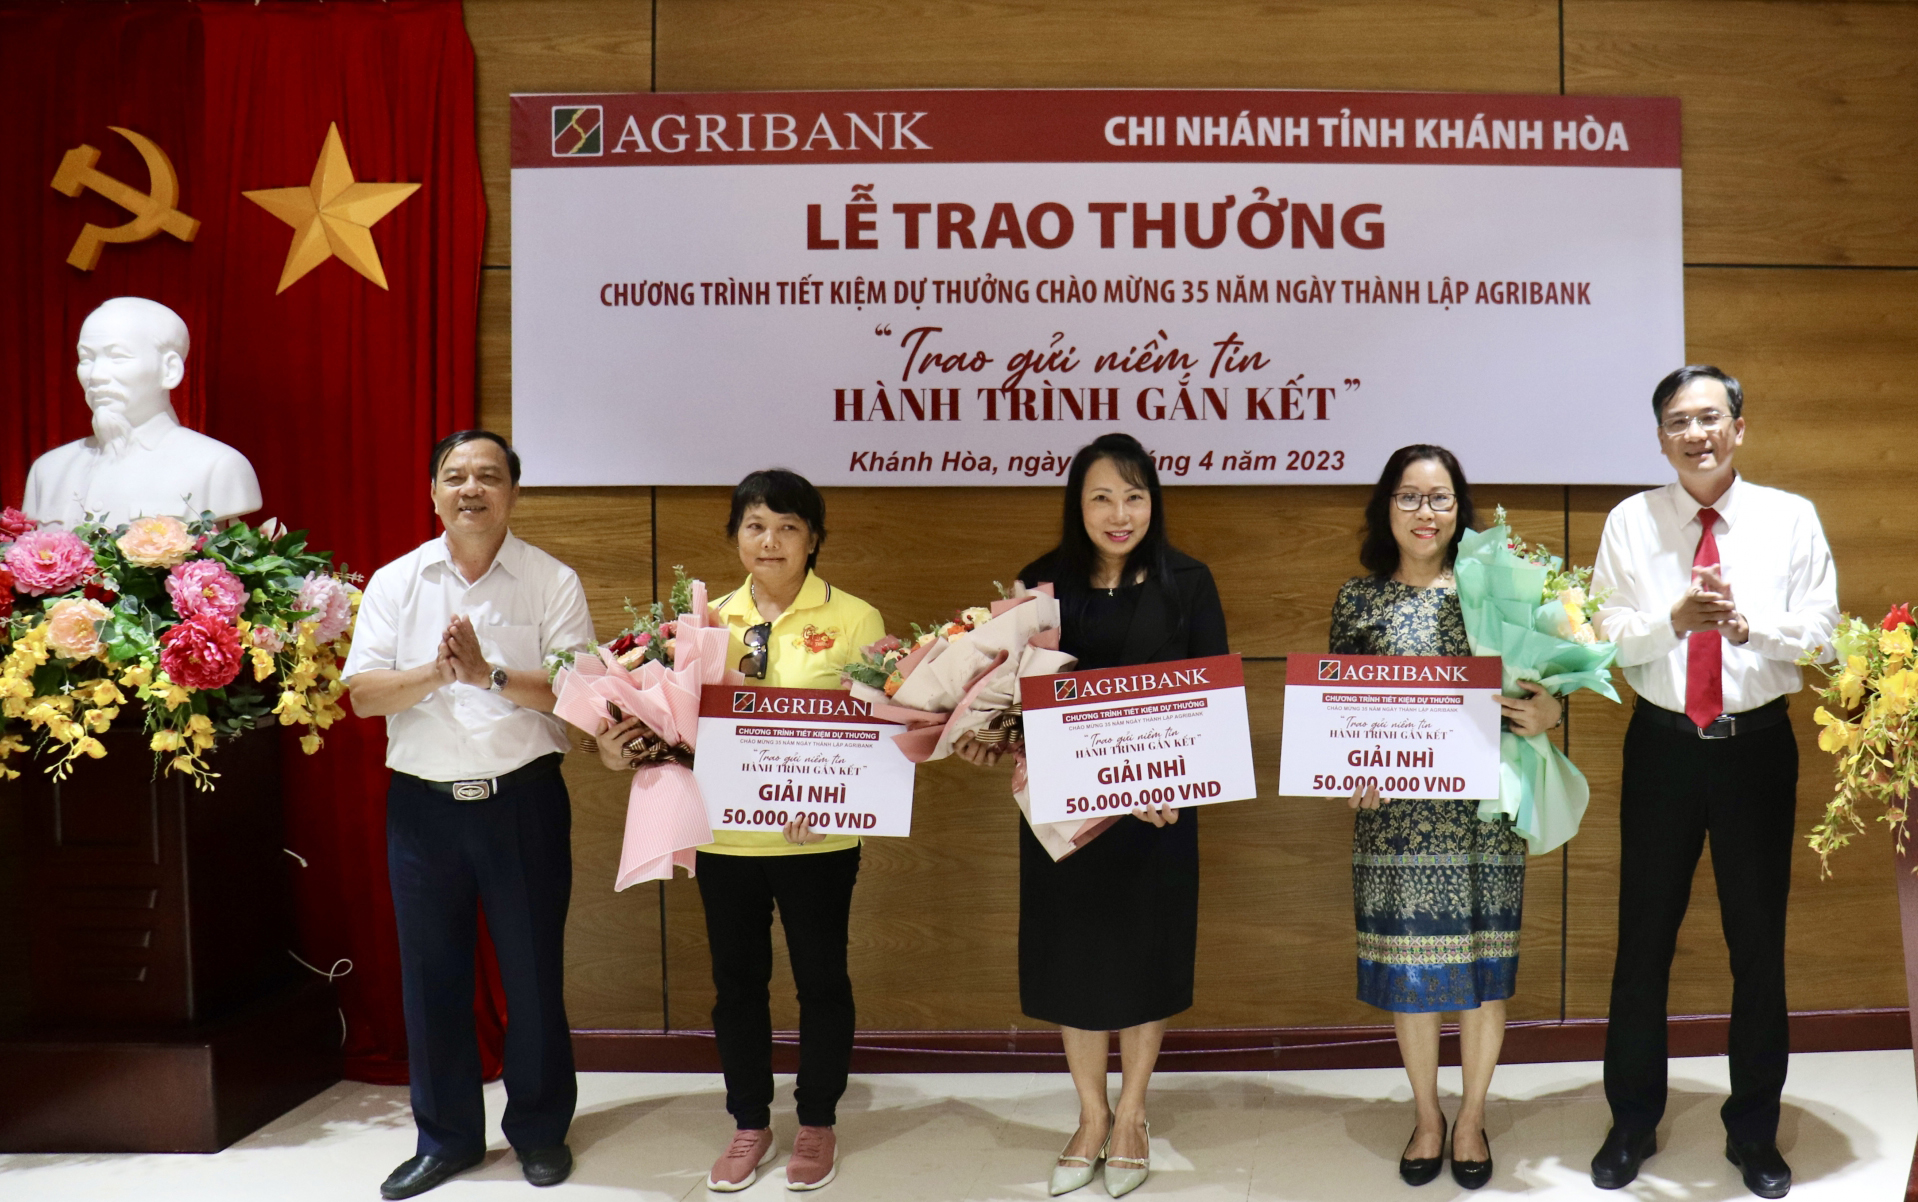 Đại diện Agribank Chi nhánh tỉnh Khánh Hòa tặng hoa chúc mừng và trao bảng tượng trưng giải thưởng cho các khách hàng trúng giải nhì.